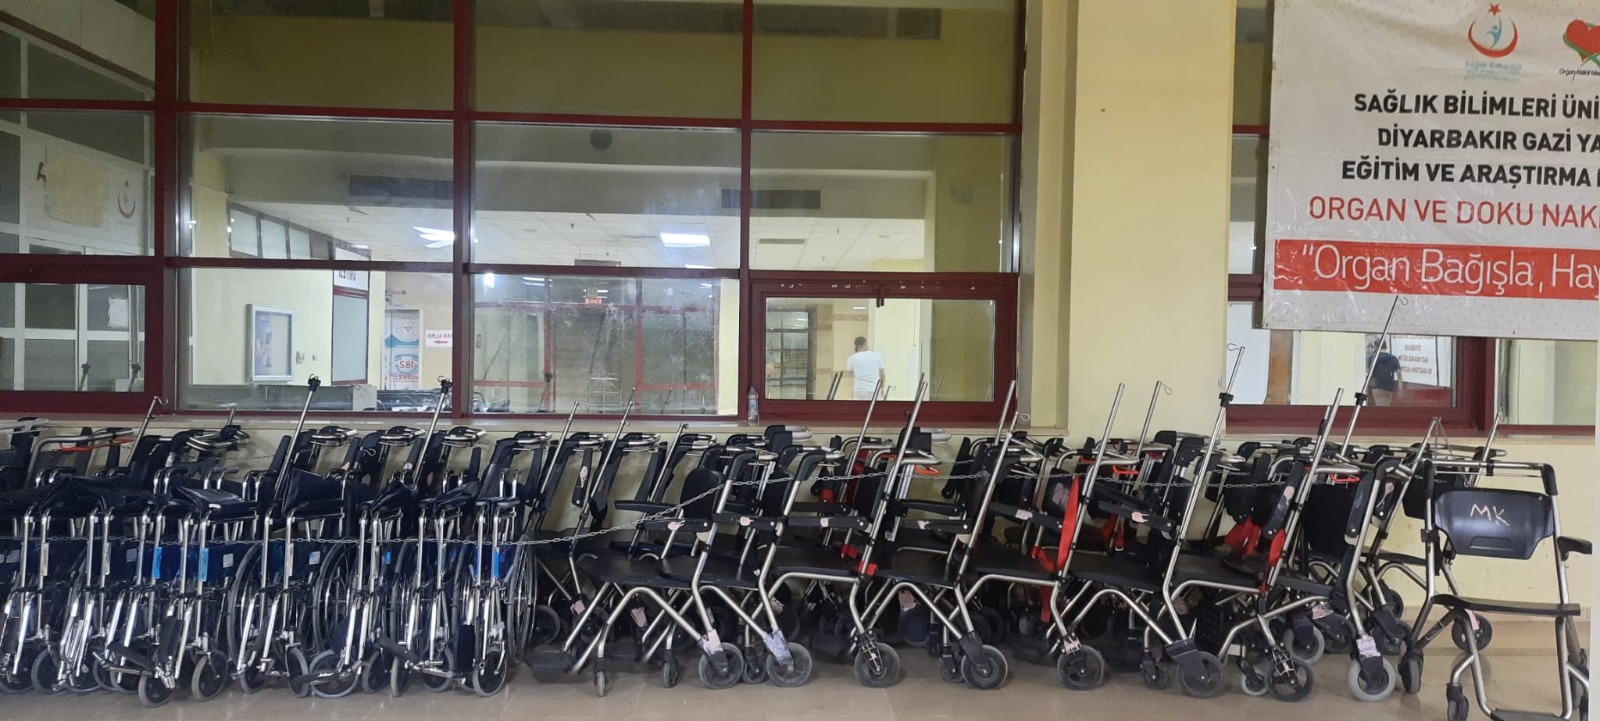 Diyarbakır’da hastane: Sedye ve tekerlekli sandalye kilit altında!